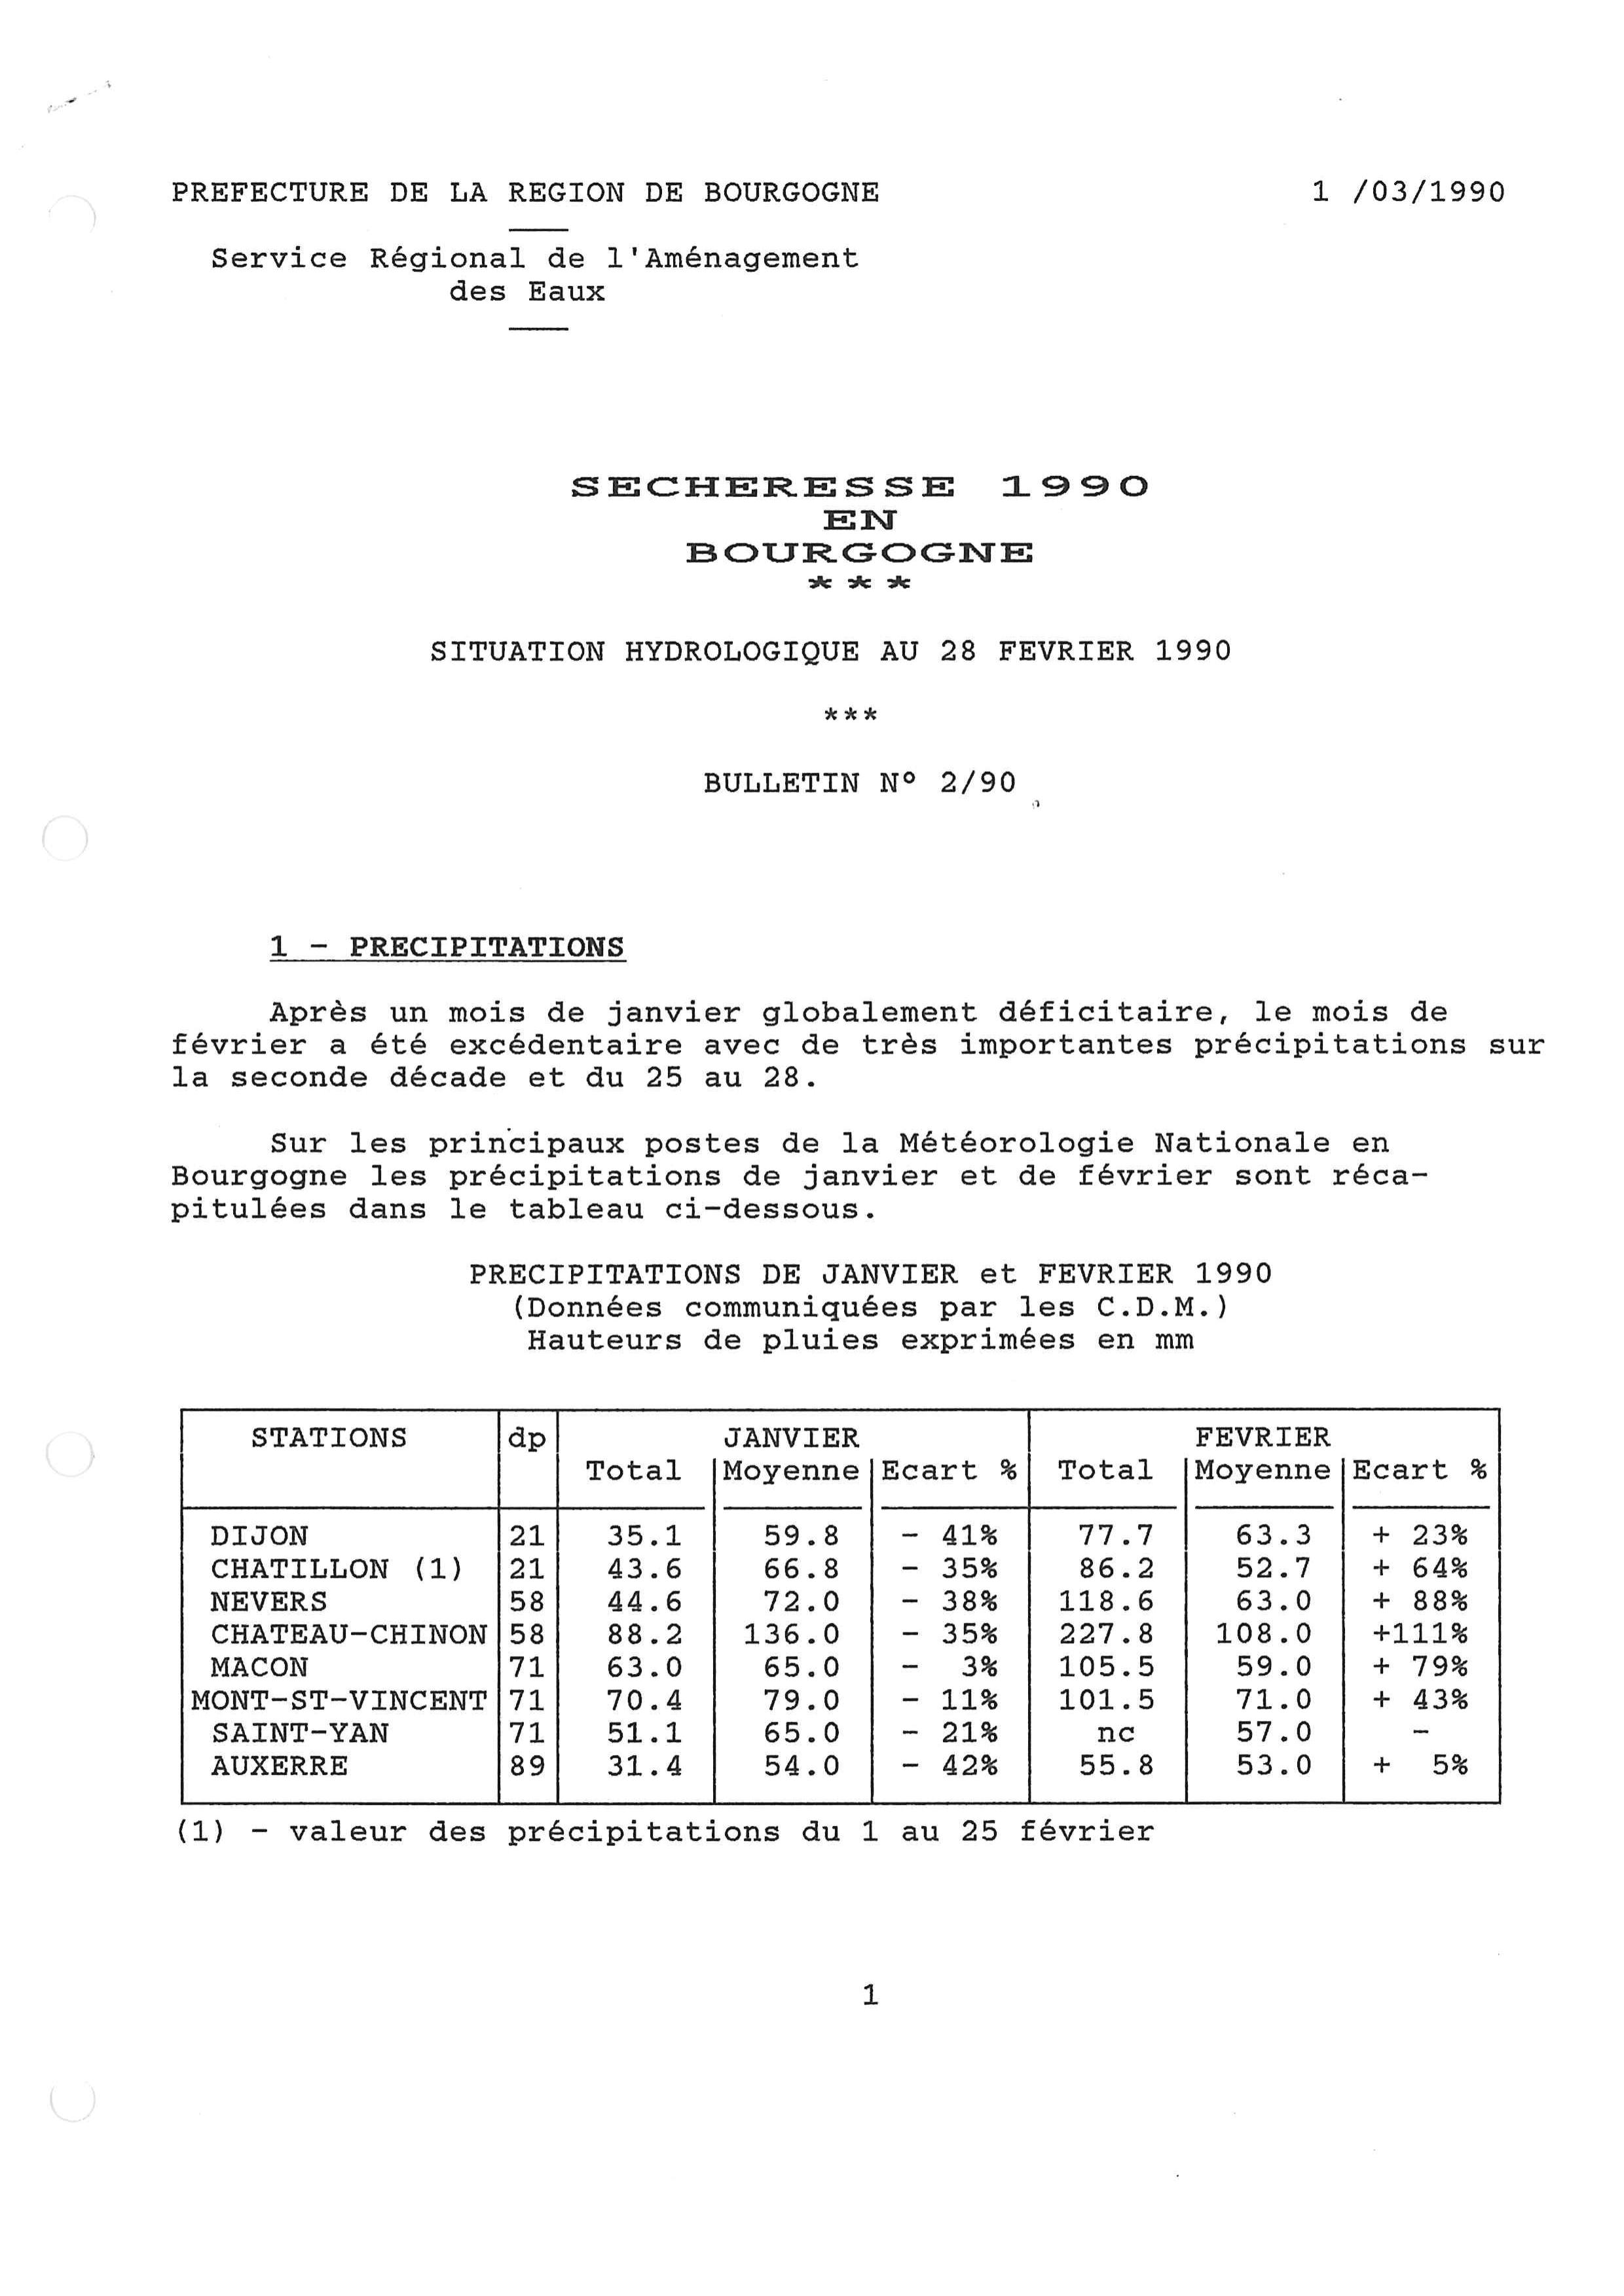 Bulletin hydrologique du mois de février 1990